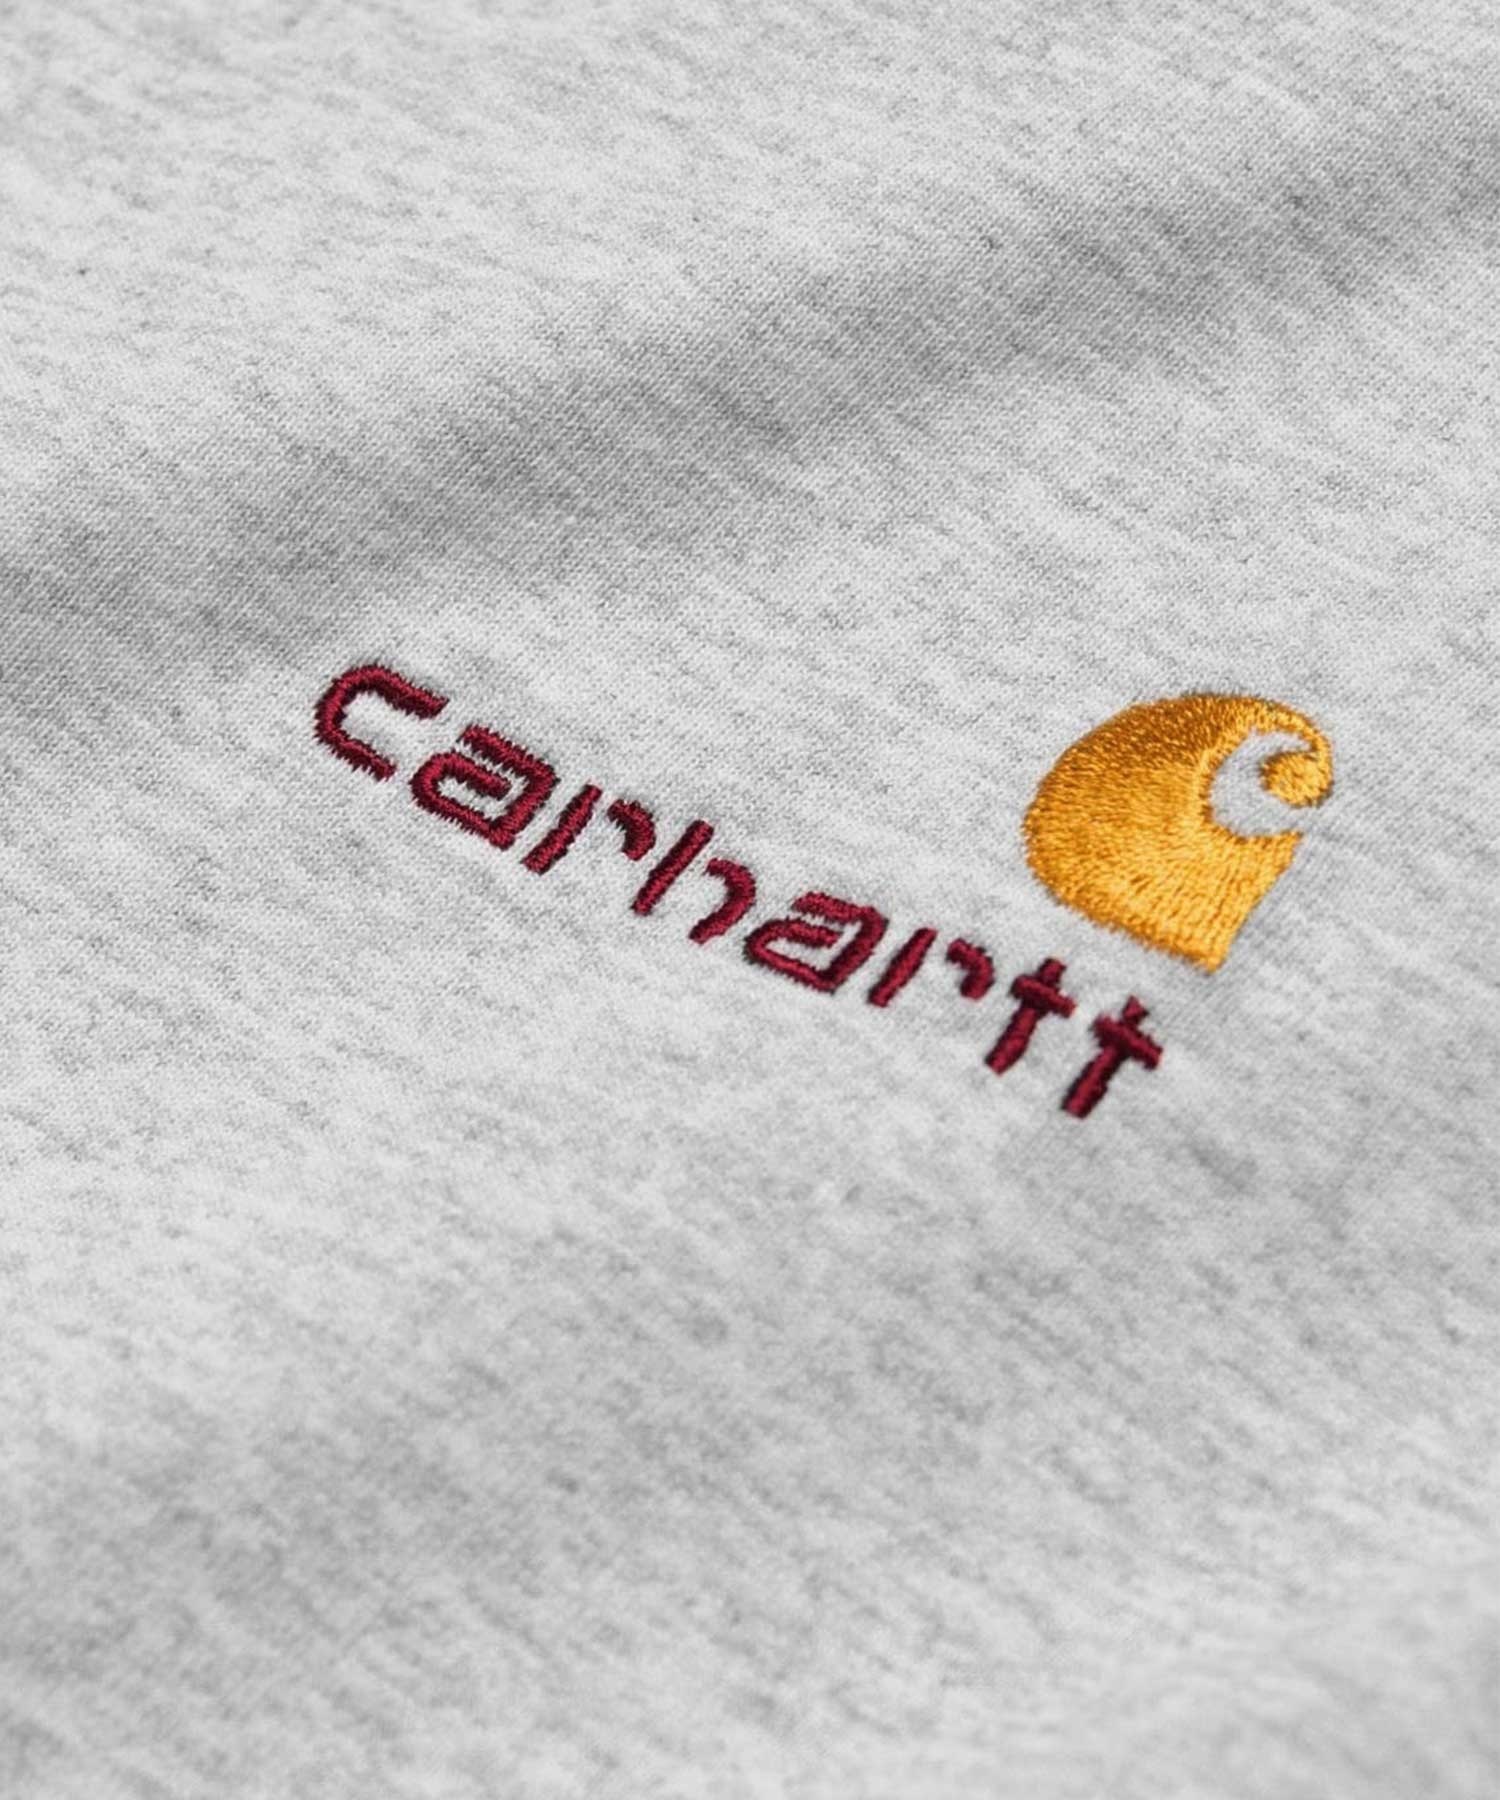 Carhartt WIP/カーハートダブリューアイピー メンズ 長袖 Tシャツ 